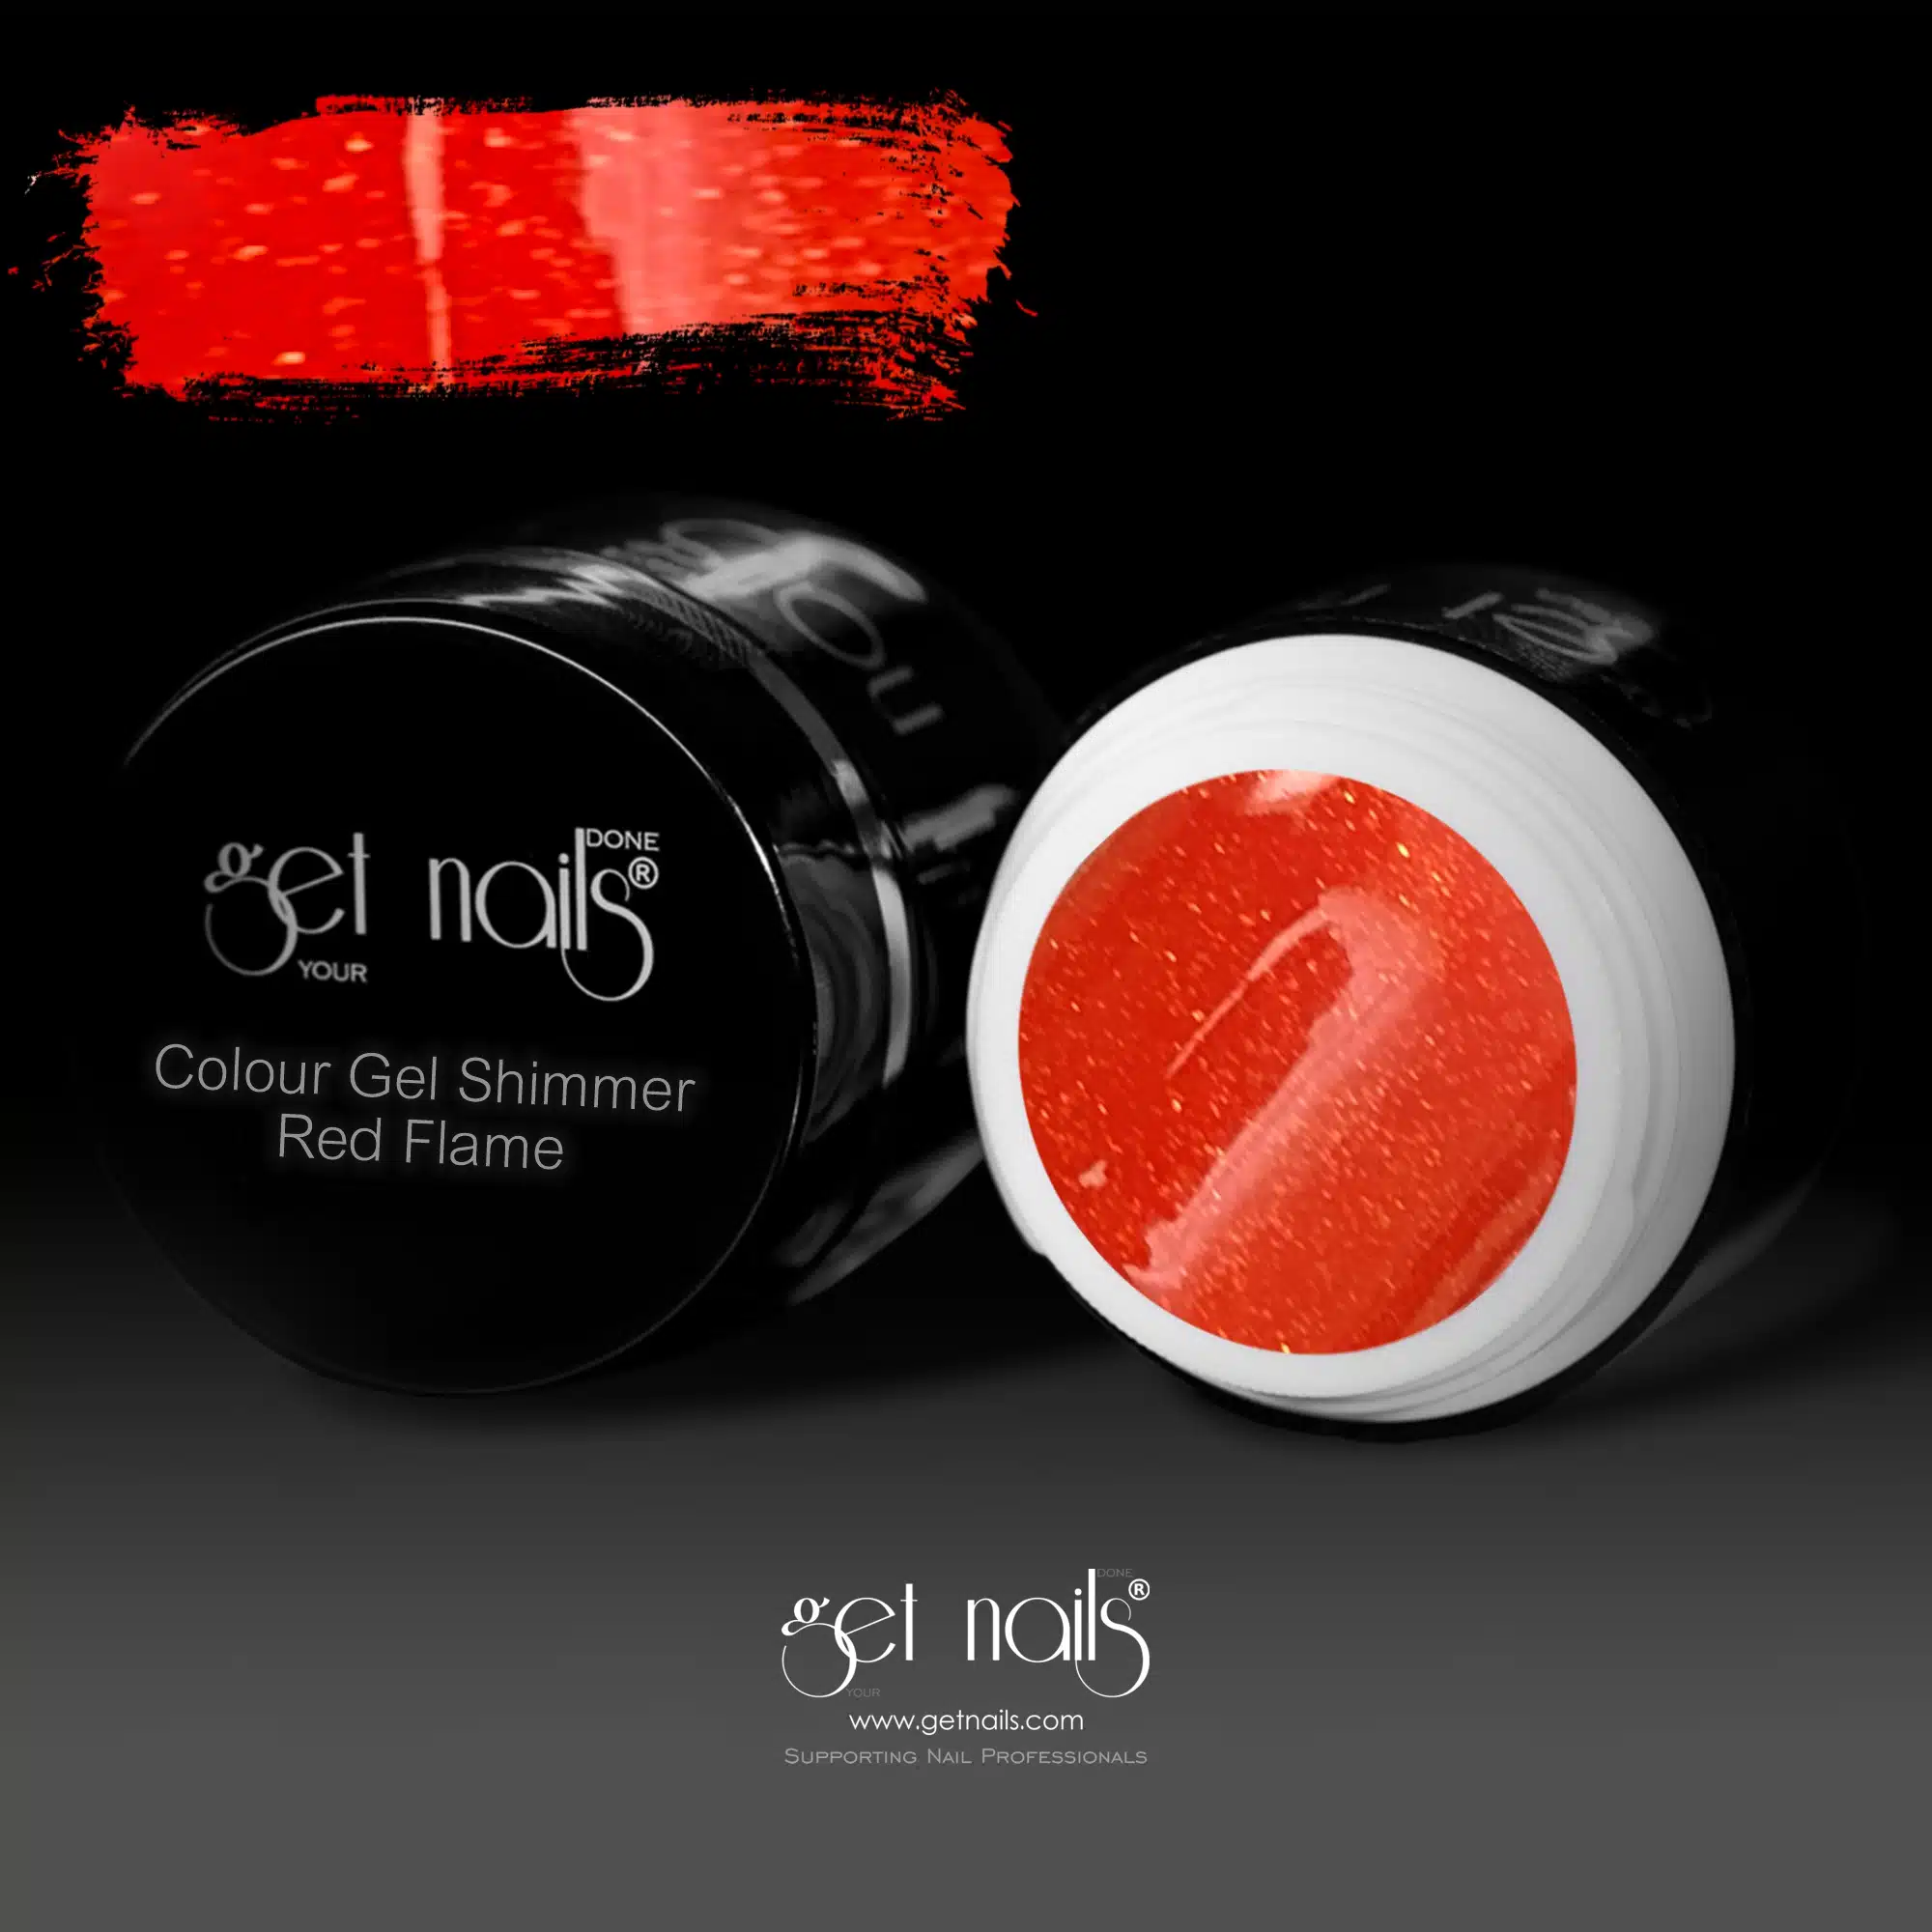 Get Nails Austria - Цветной гель Shimmer Red Flame 5g